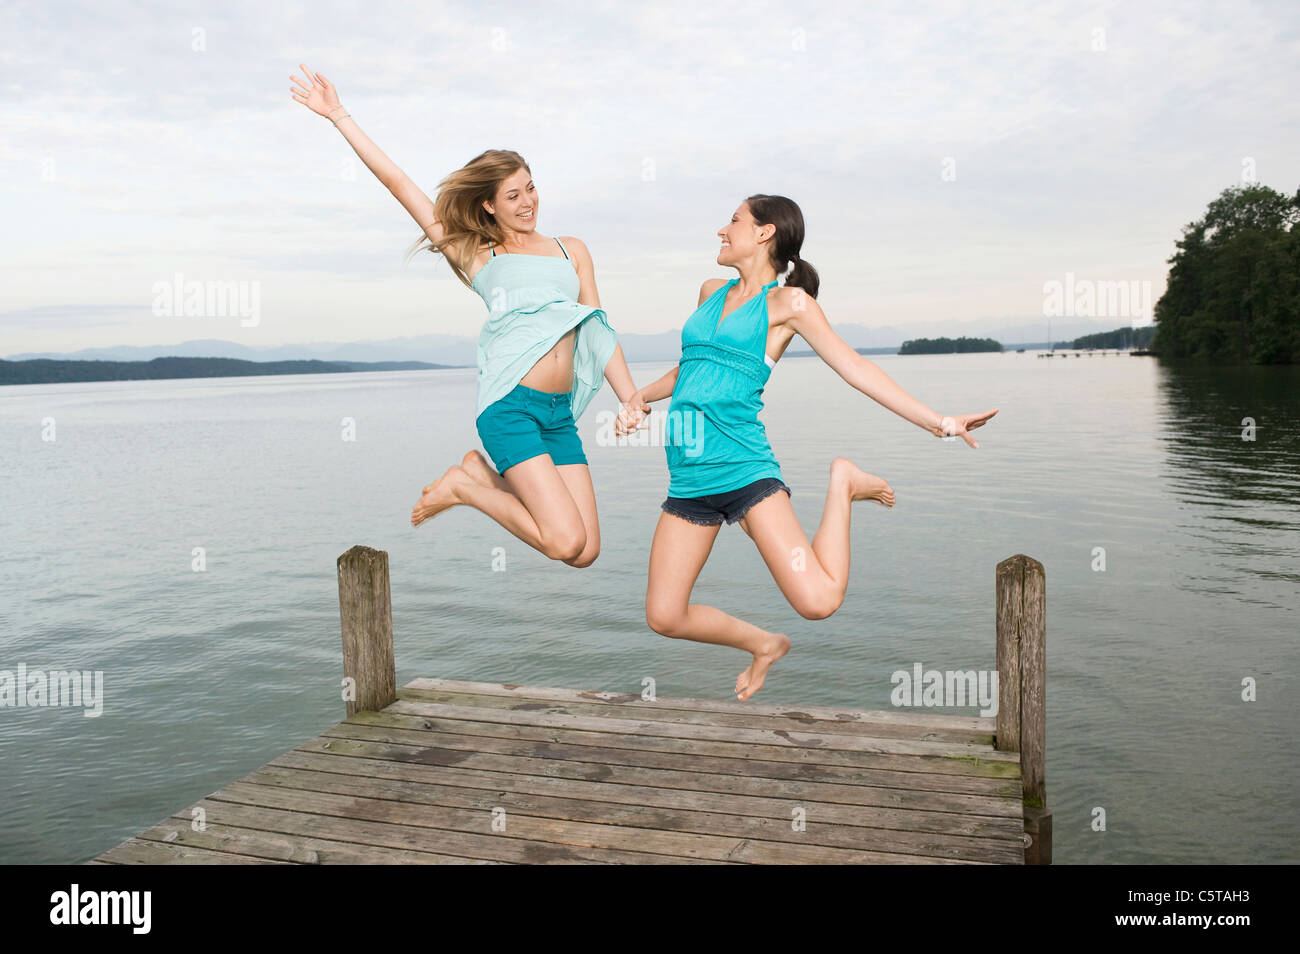 Allemagne, Berlin, deux jeunes femmes sautant sur jetty, rire, portrait Banque D'Images